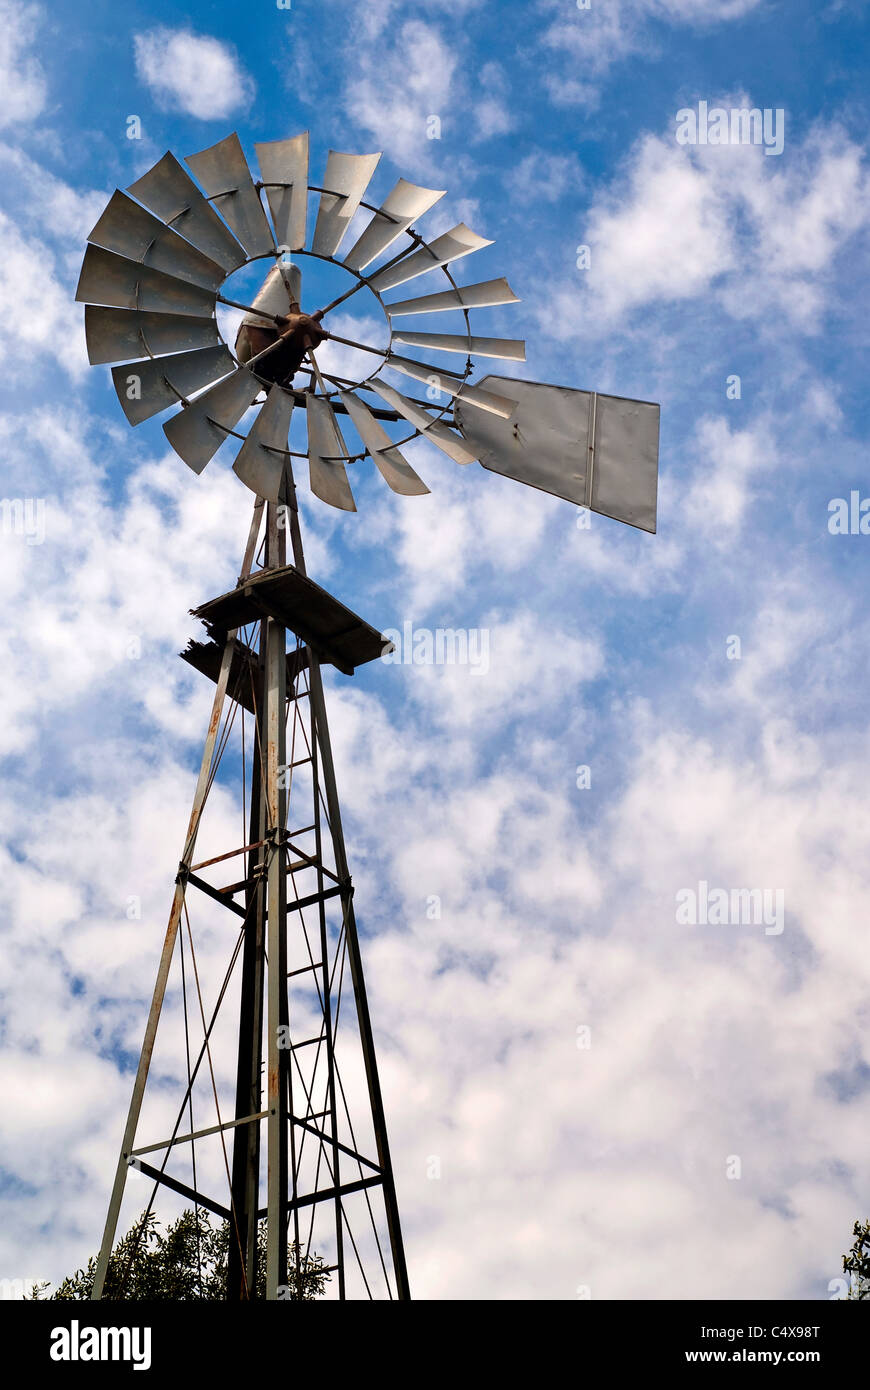 Un viejo molino de viento de metal contra un nublado cielo azul. Foto de stock